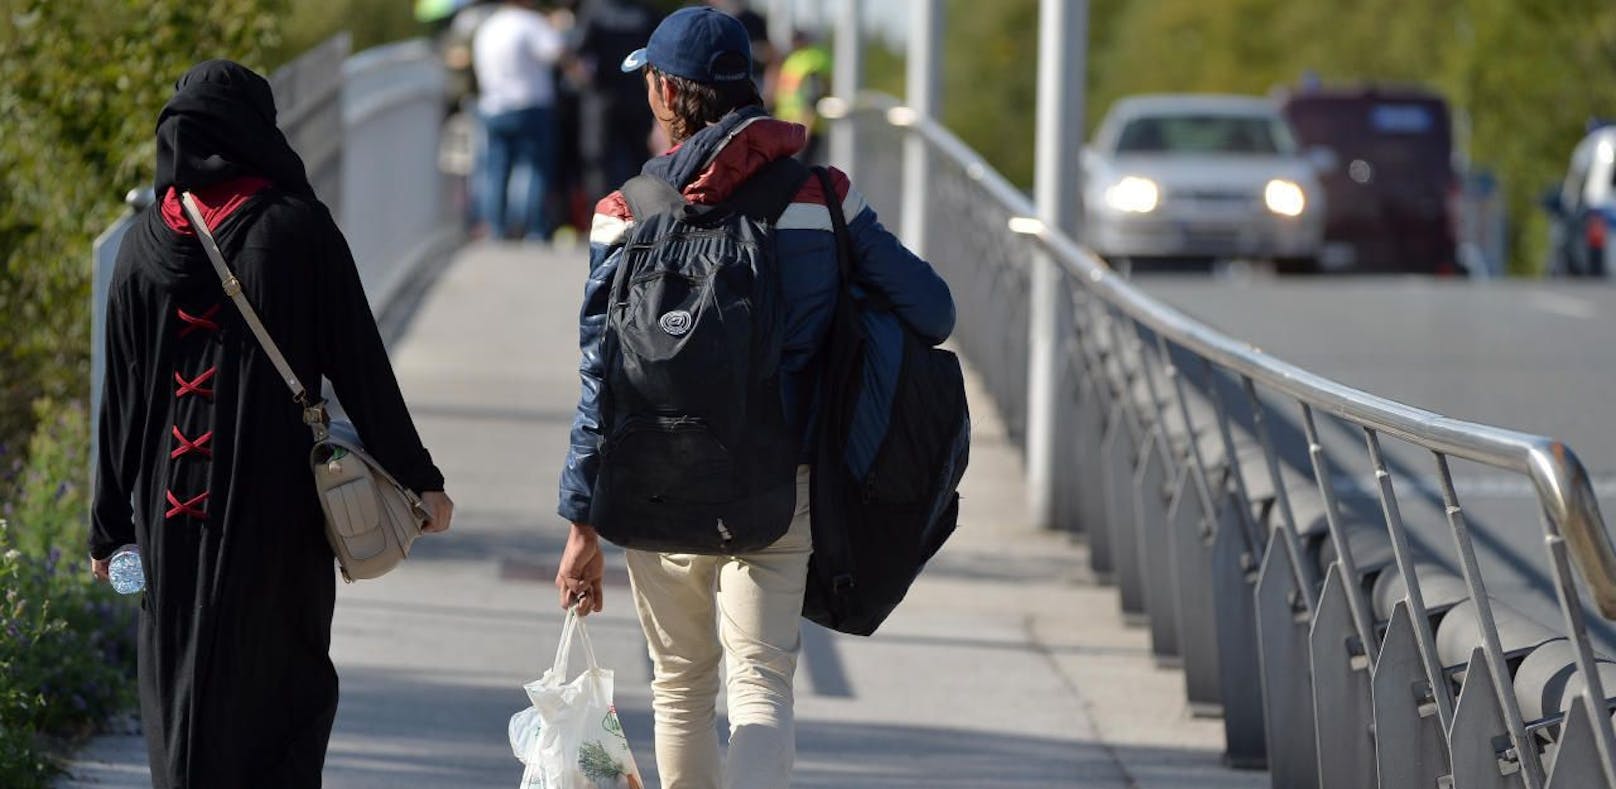 Flüchtlinge sind am Mittwoch, 17. September 2015, zu Fuß in kleineren Gruppen von Salzburg in Richtung Grenzübergang Freilassing unterwegs und werden von der Polizei direkt nach dem Übergang Saalbrücke angehalten und zur Registrierung gebracht.